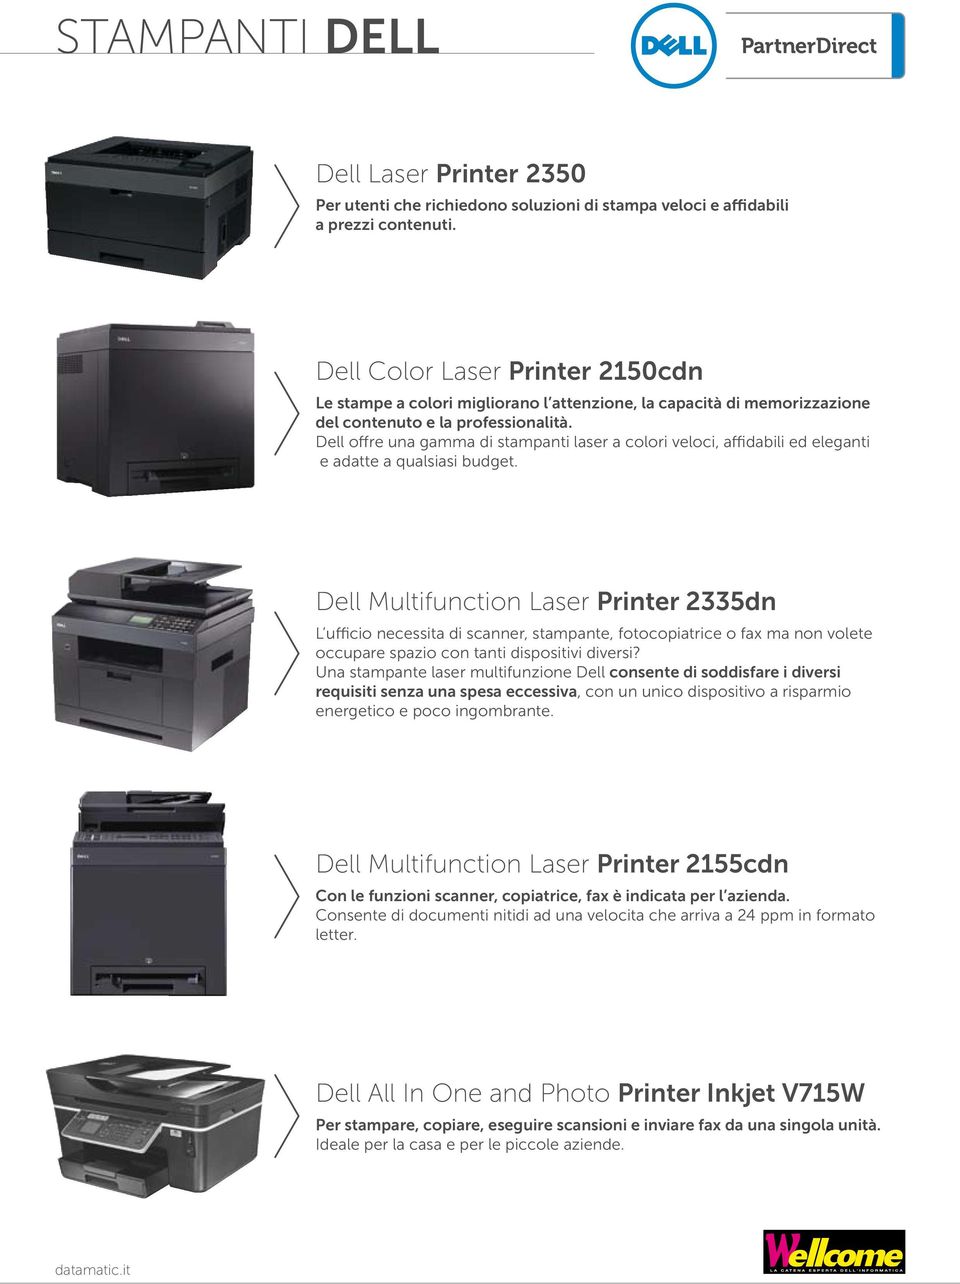 Dell offre una gamma di stampanti laser a colori veloci, affidabili ed eleganti e adatte a qualsiasi budget.